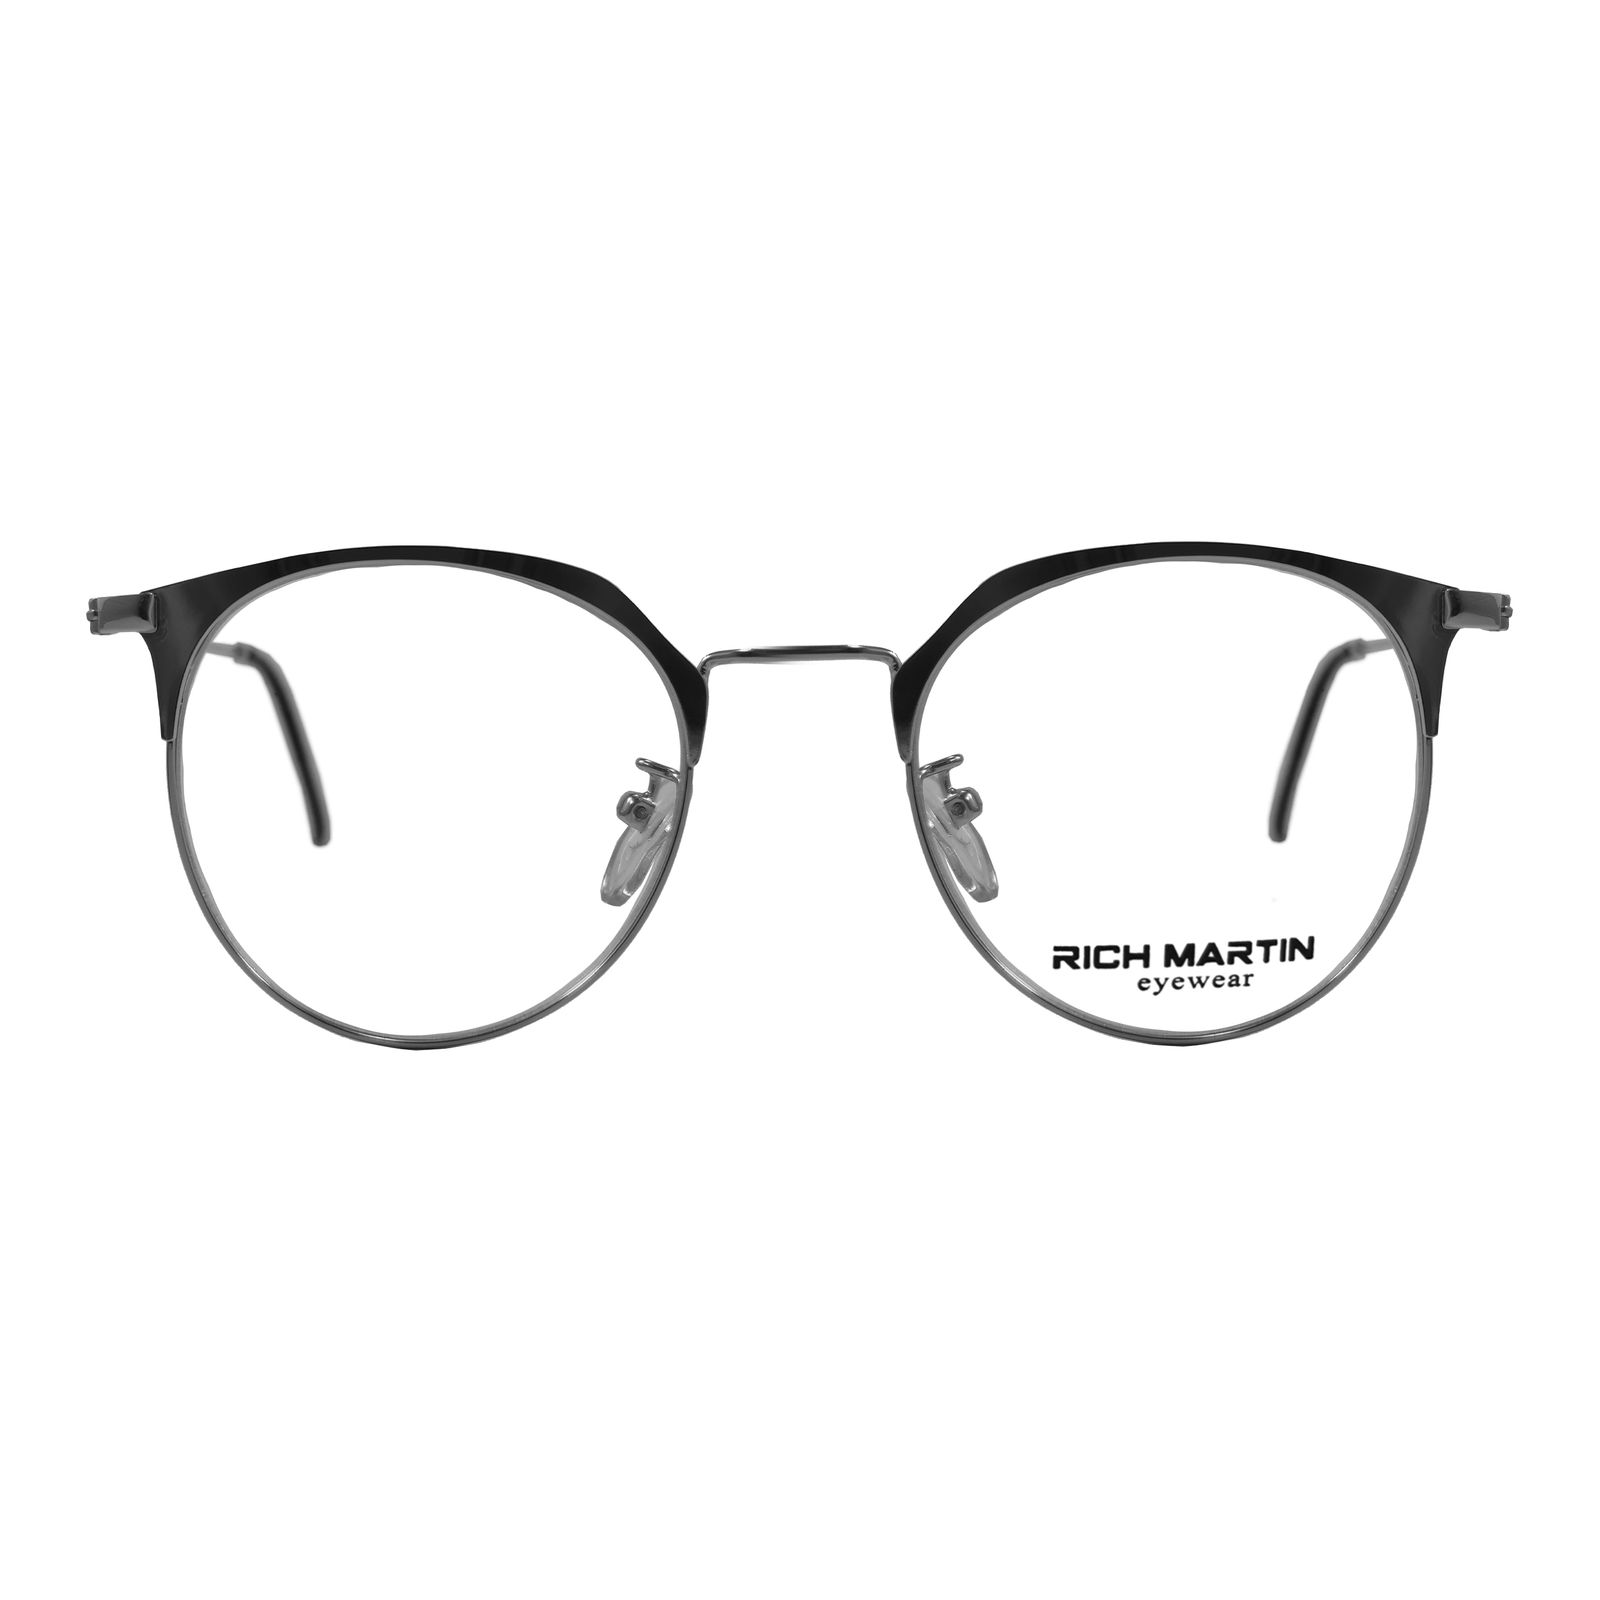 فریم عینک طبی ریچ مارتین مدل 3216 کد 110 -  - 1